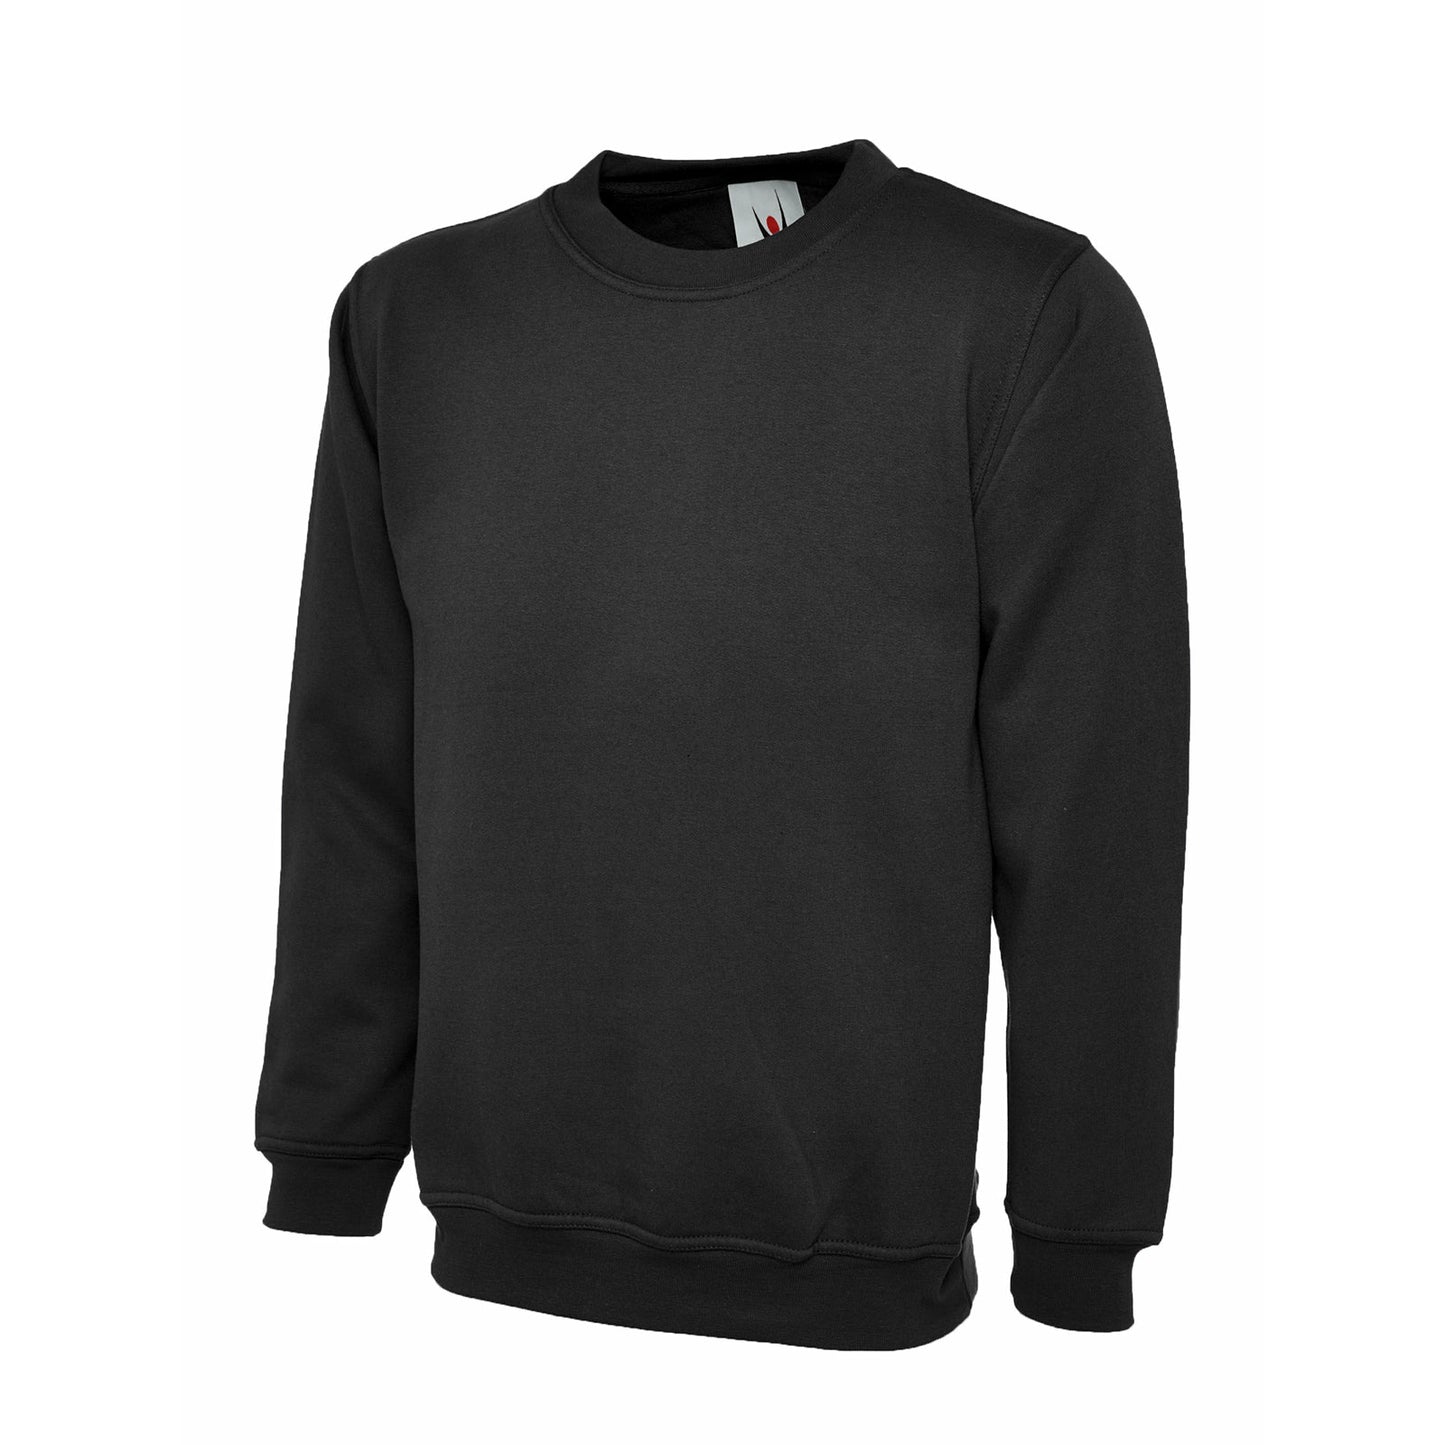 The UX Children's Sweatshirt - Black